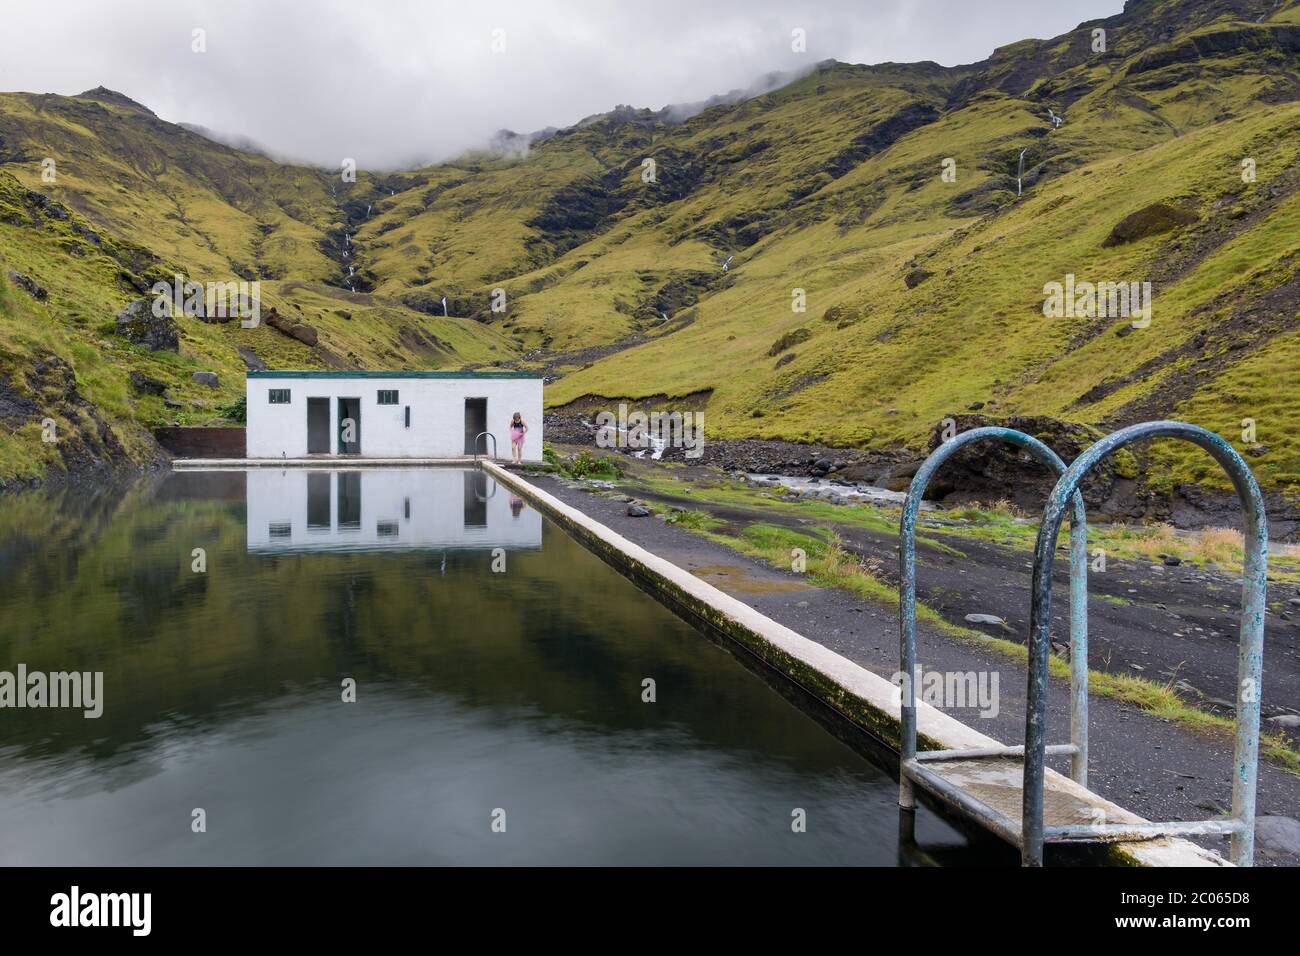 Seljavallalaug, piscine extérieure avec source chaude dans les montagnes, Seljavellir, près de Skógar, Suðurland, Sudurland, Sud de l'Islande, Islande, Europe Banque D'Images